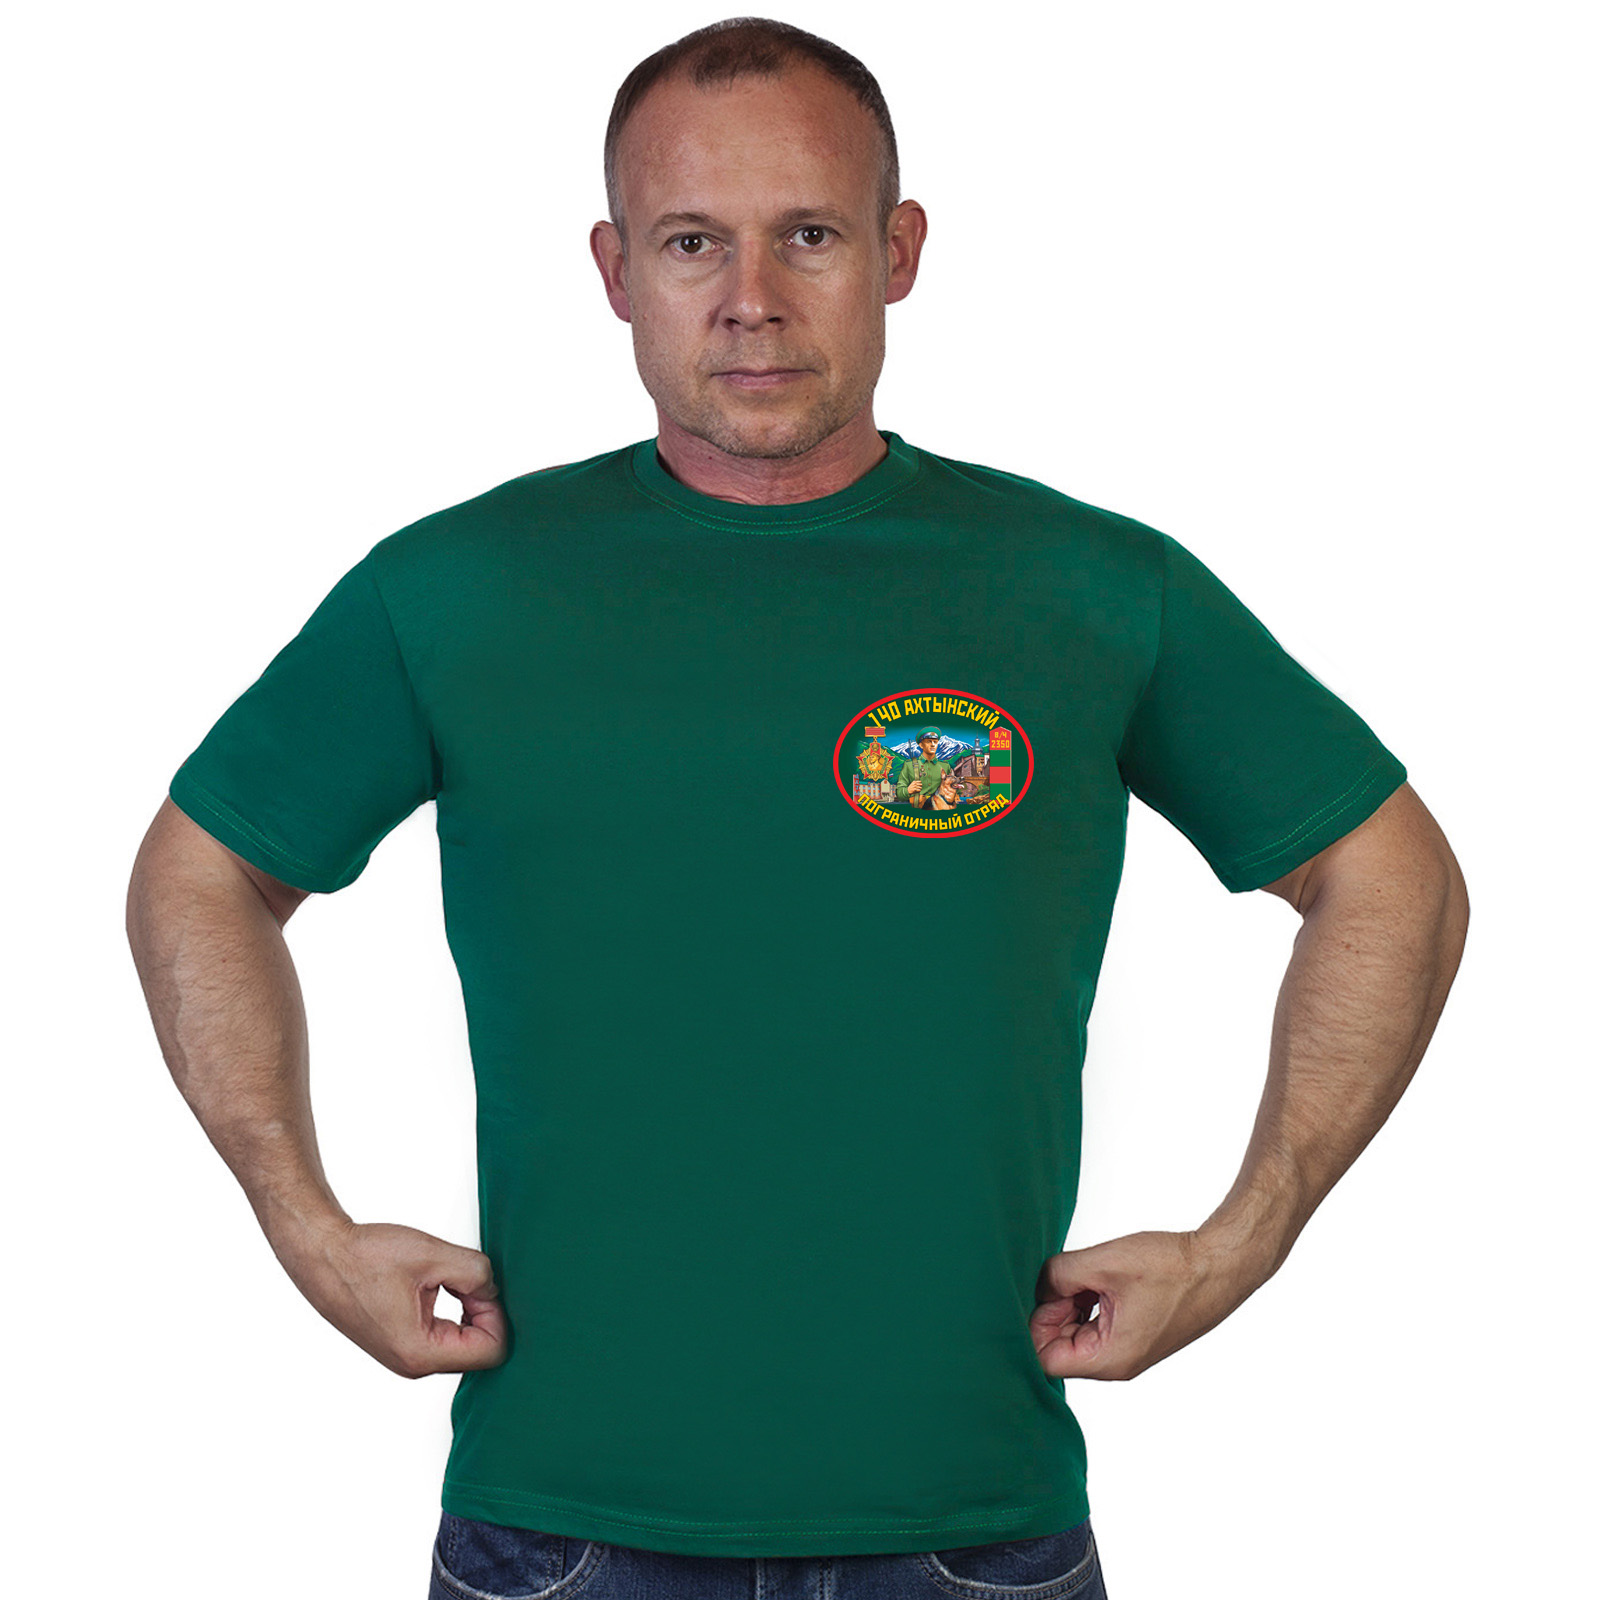 Купить в интернет магазине футболку 140 Ахтынский пограничный отряд